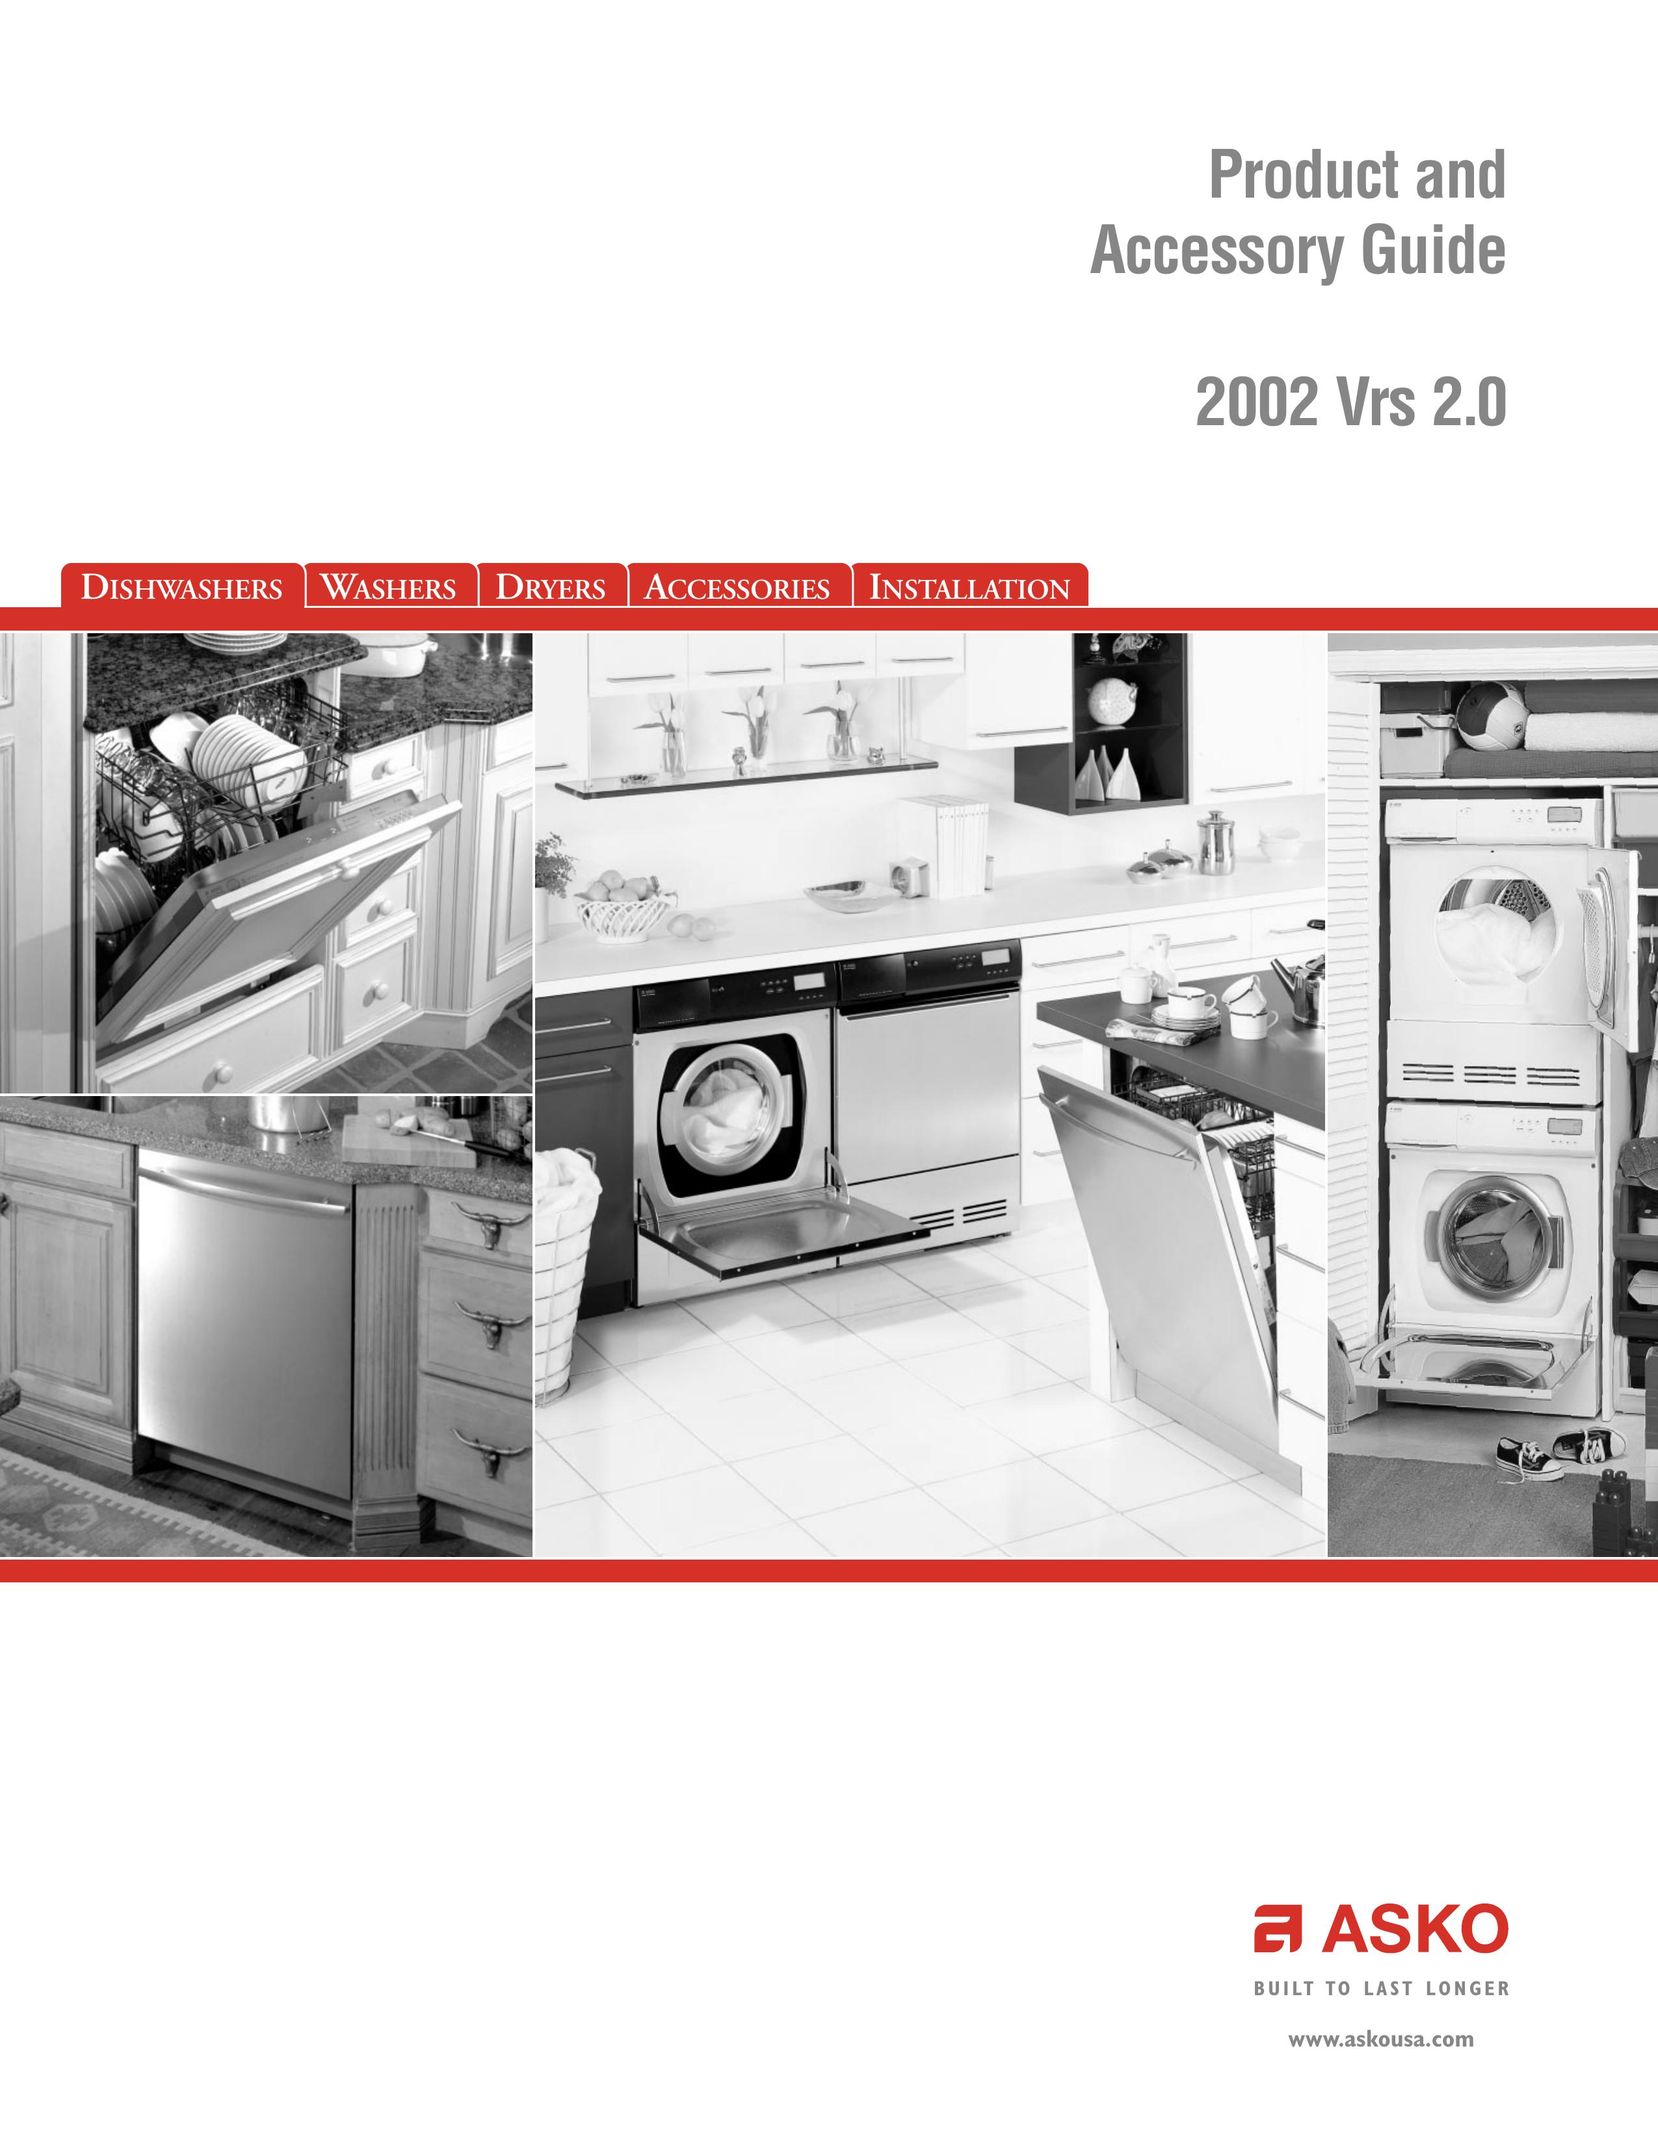 Fisher & Paykel 2002 VRS 2.0 Dishwasher User Manual